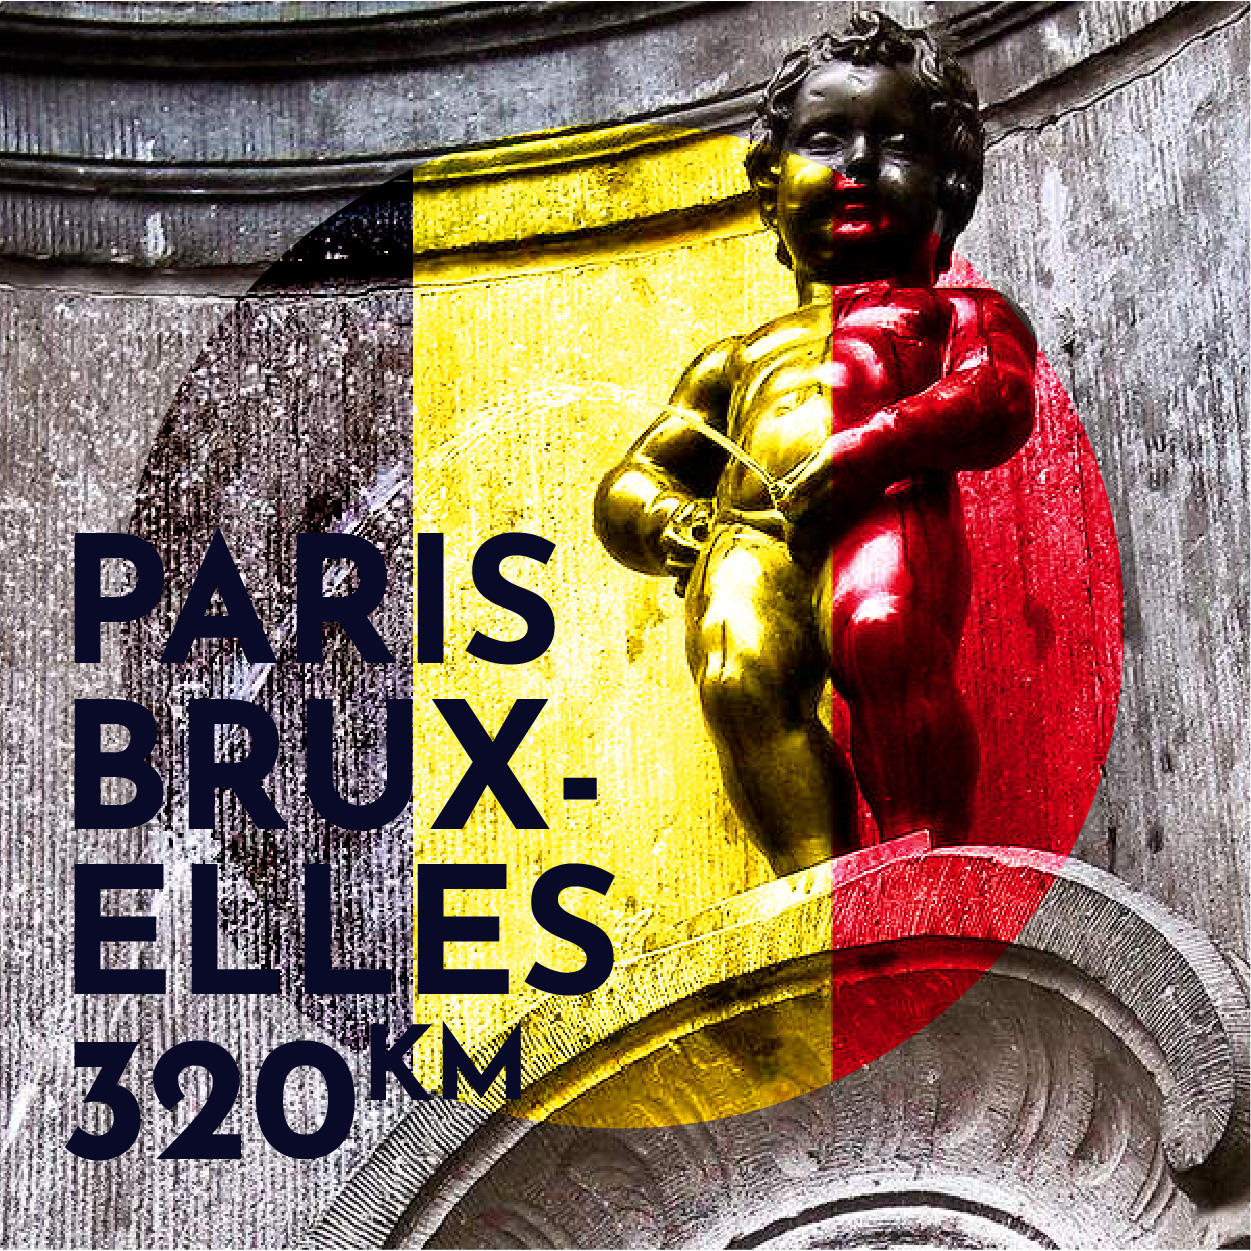 Paris Bruxelles par les canaux 333km